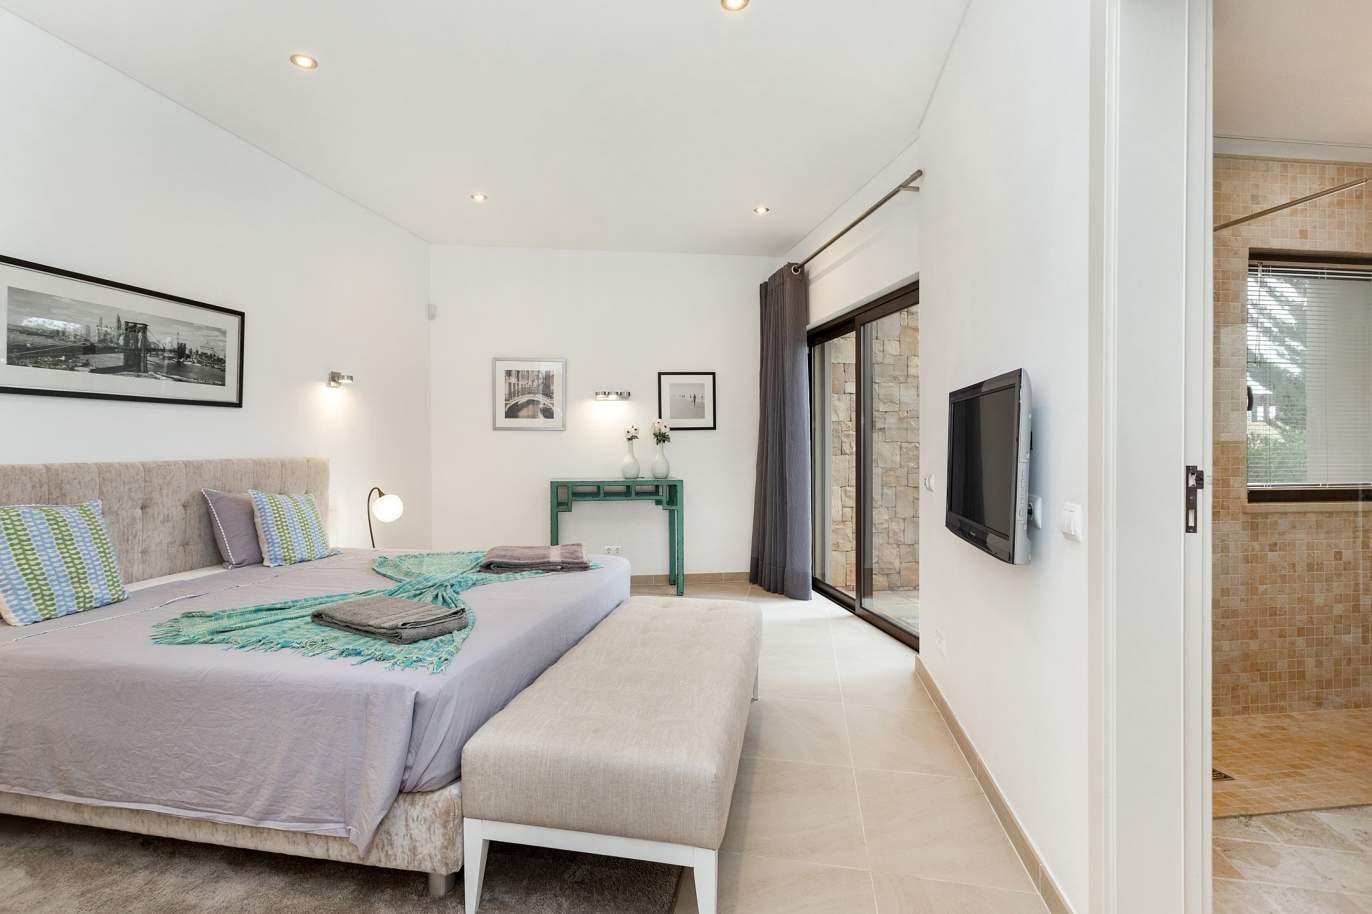 4+1 Bedroom Villa, for sale, in Vilamoura - Algarve_188739